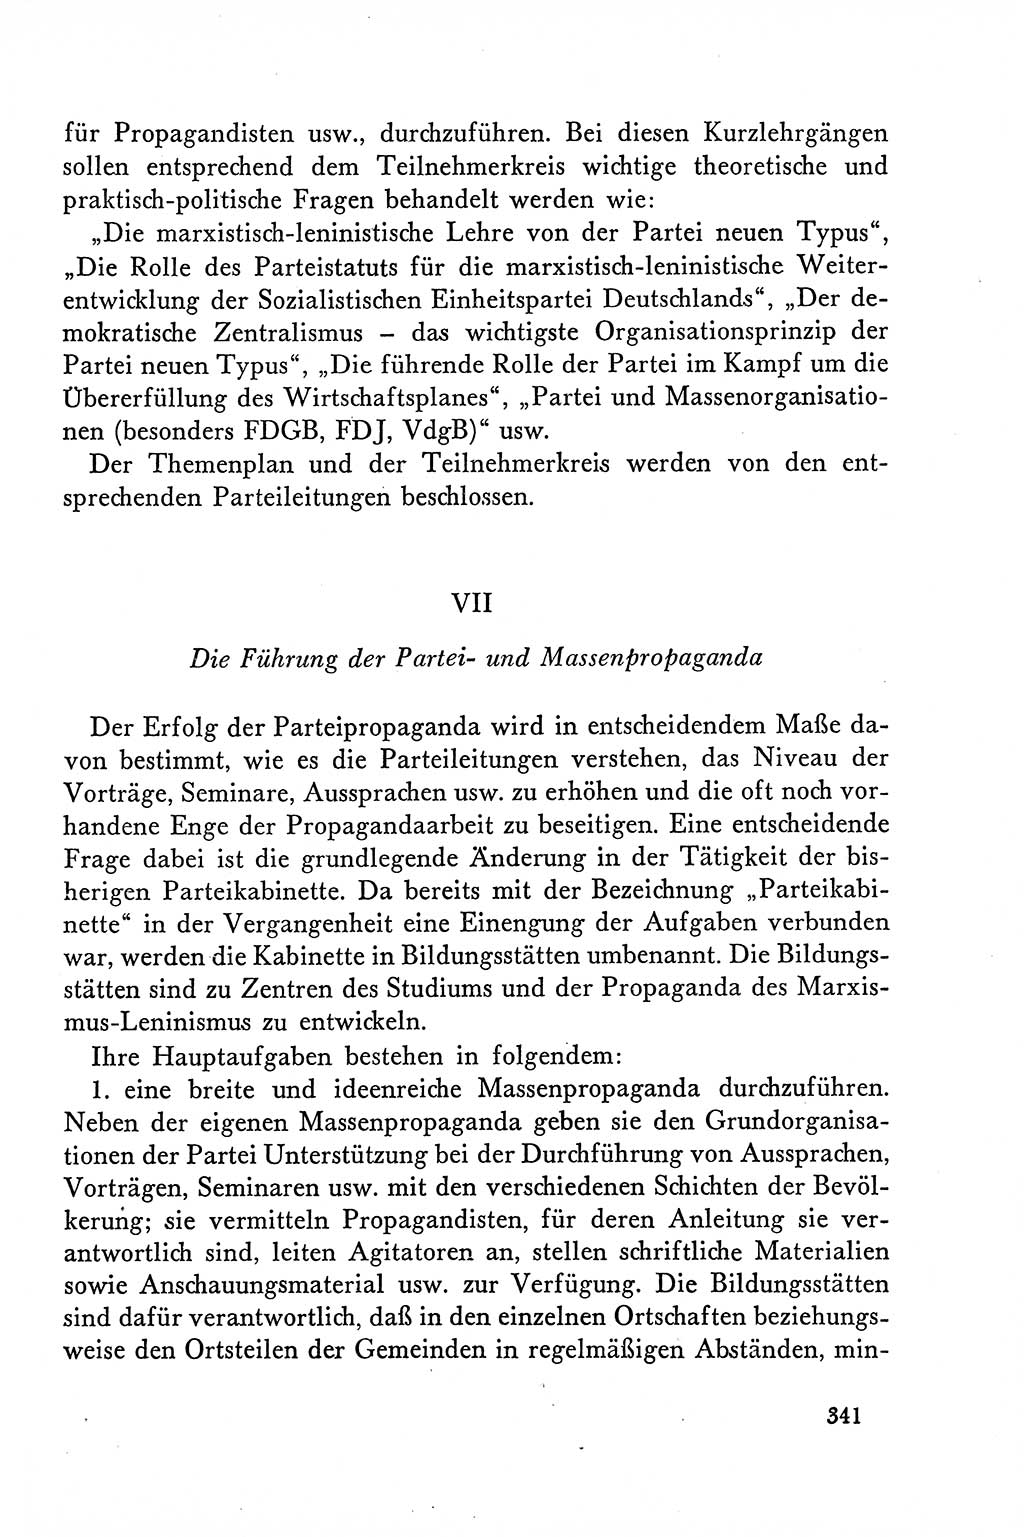 Dokumente der Sozialistischen Einheitspartei Deutschlands (SED) [Deutsche Demokratische Republik (DDR)] 1958-1959, Seite 341 (Dok. SED DDR 1958-1959, S. 341)